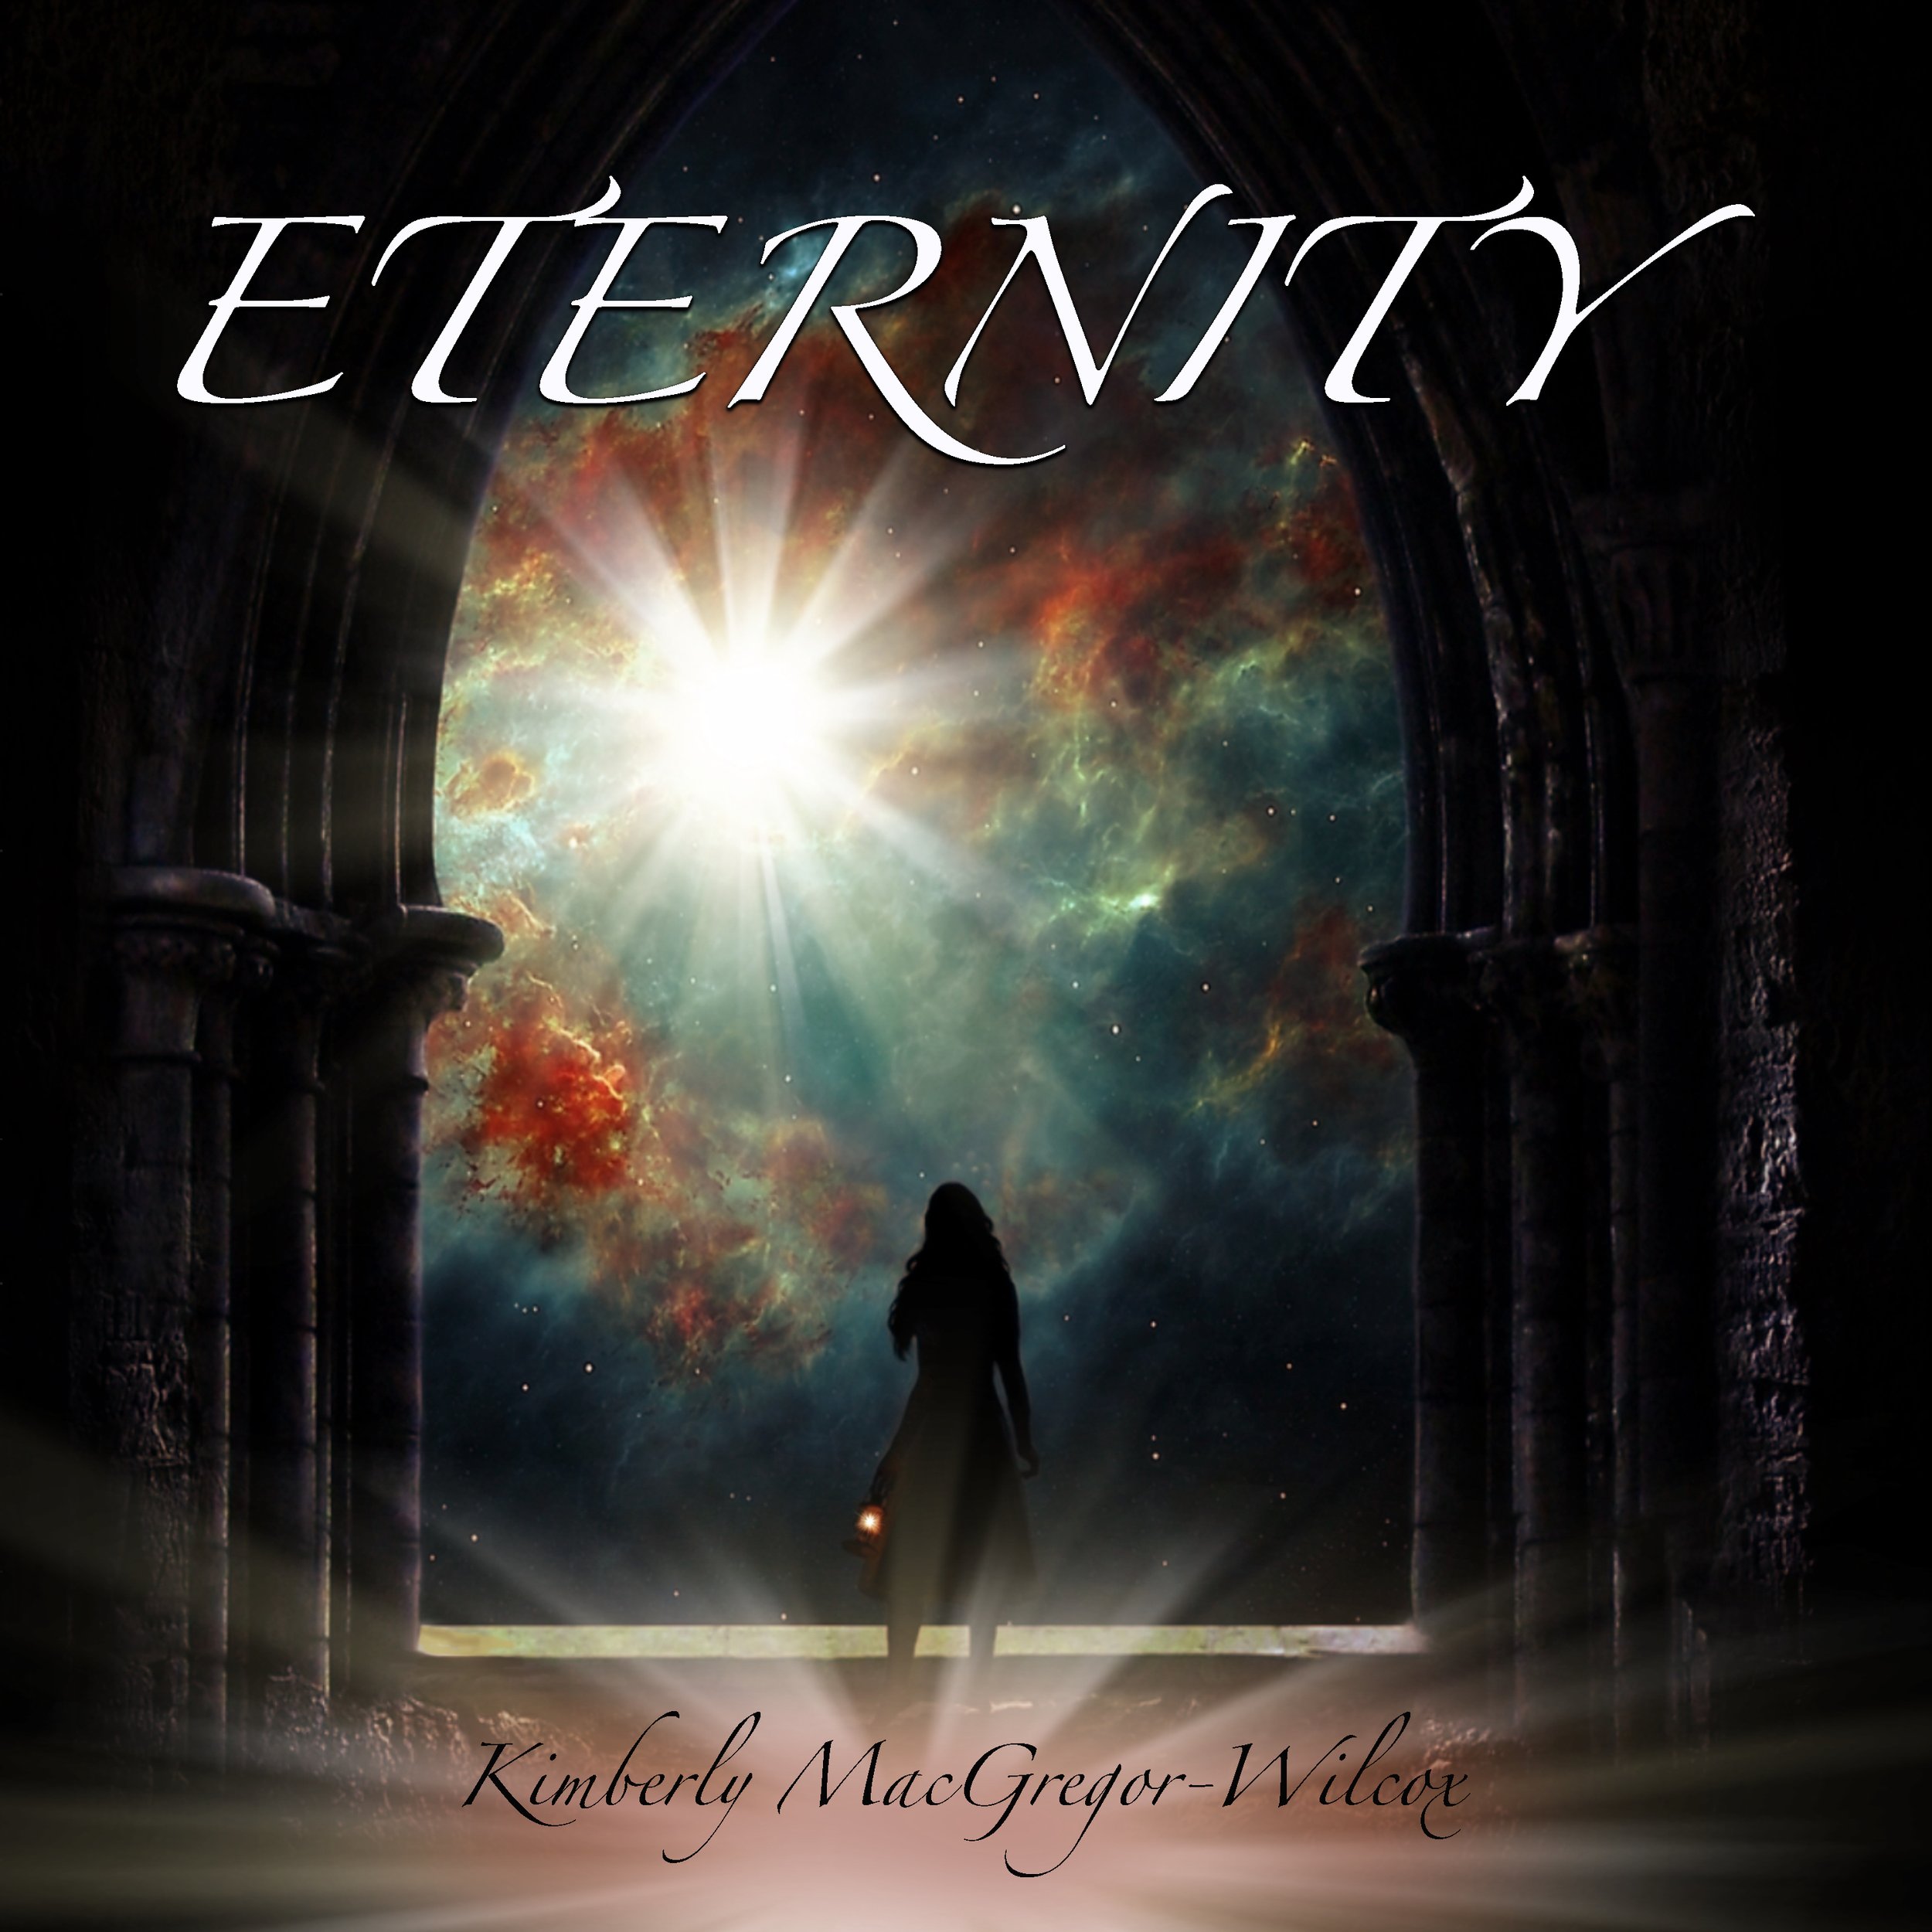 Eternity.jpg